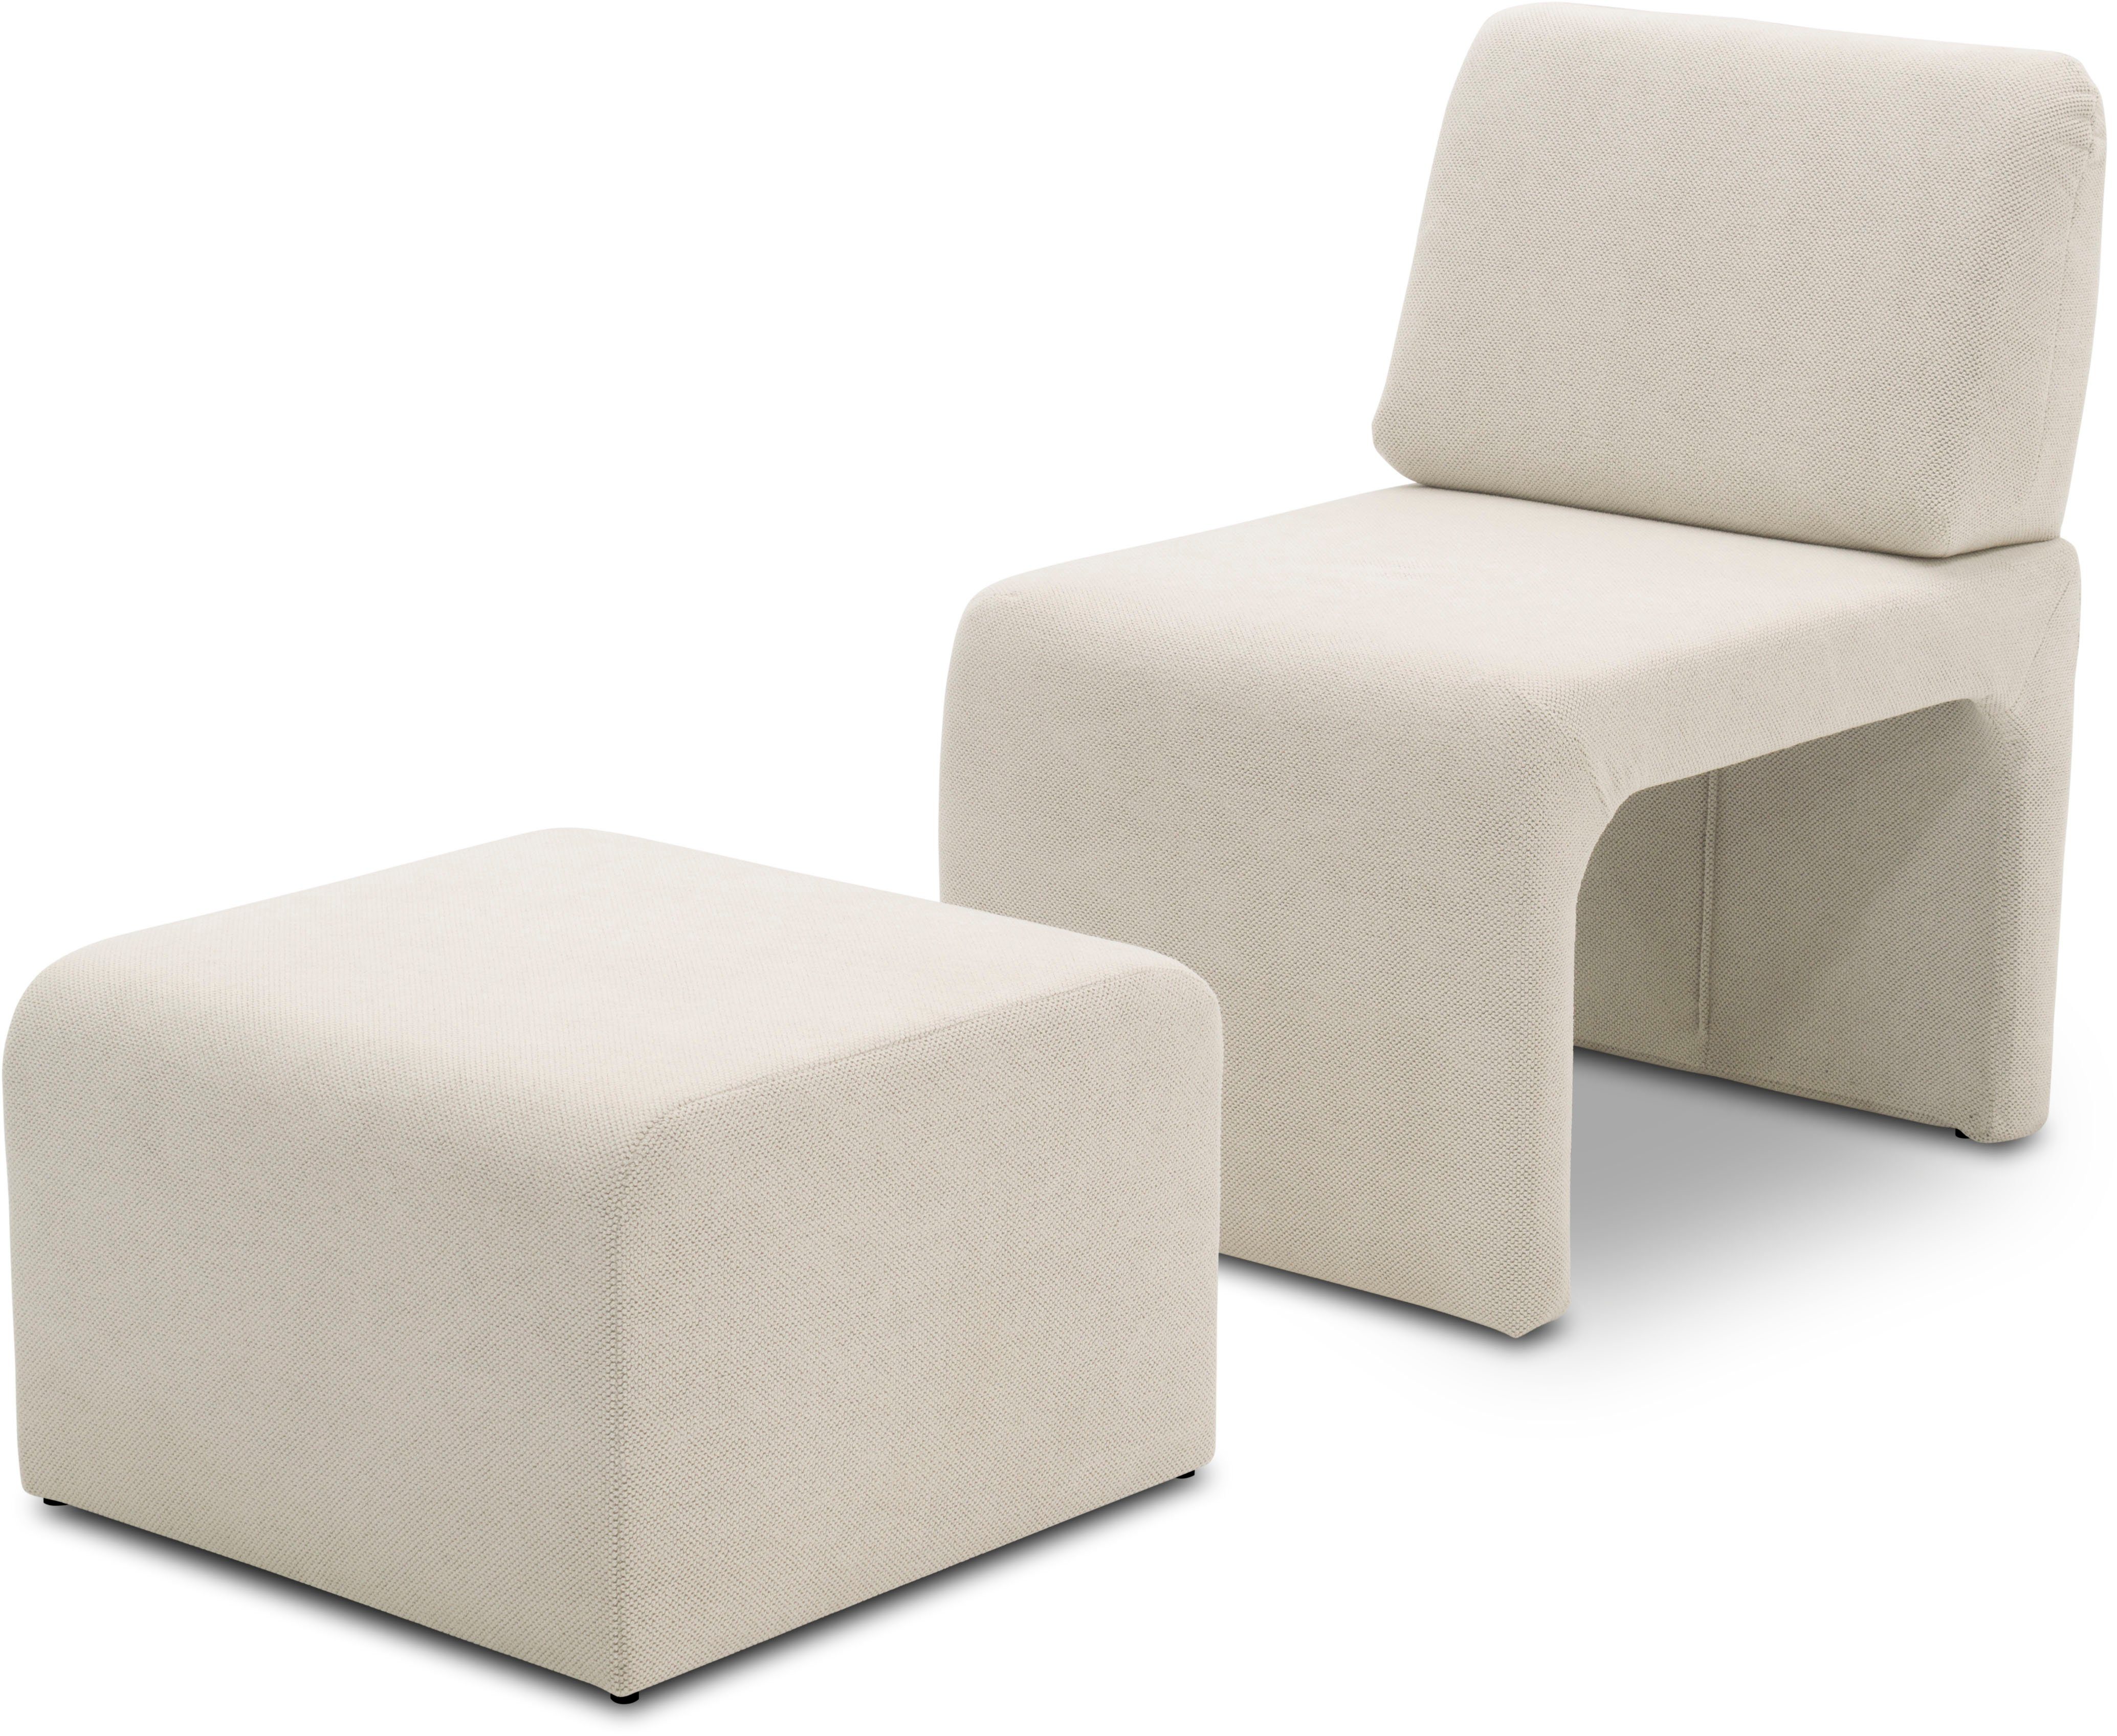 DOMO collection Sessel 700017 ideal für kleine Räume, platzsparend, trotzdem bequem, Hocker unter dem Sessel verstaubar, lieferbar in nur 2 Wochen